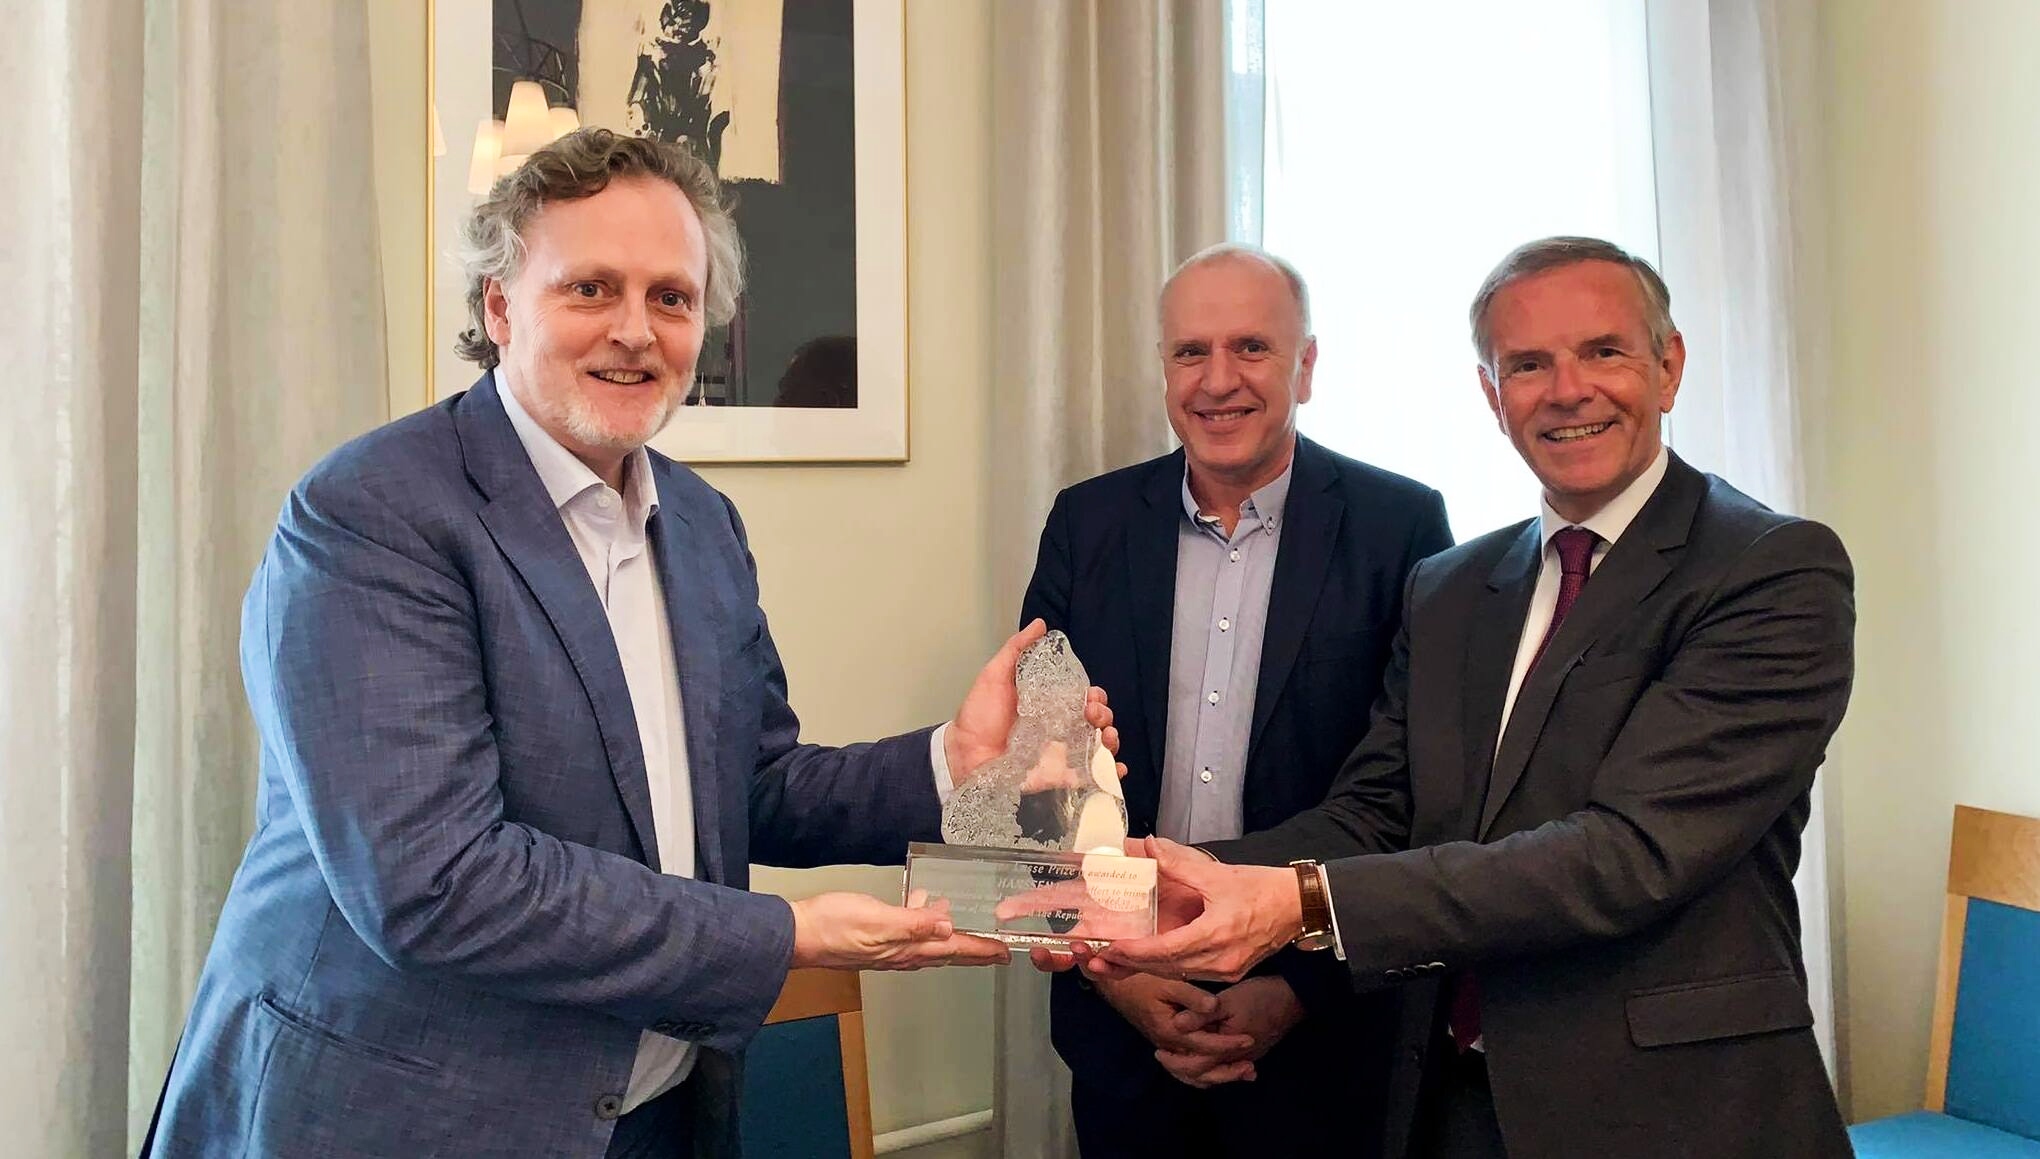 Kjetil Tetlie Hanssen was Awarded this Year’s Kloster Lasse Award at Norwegian Ambassador’s Residency